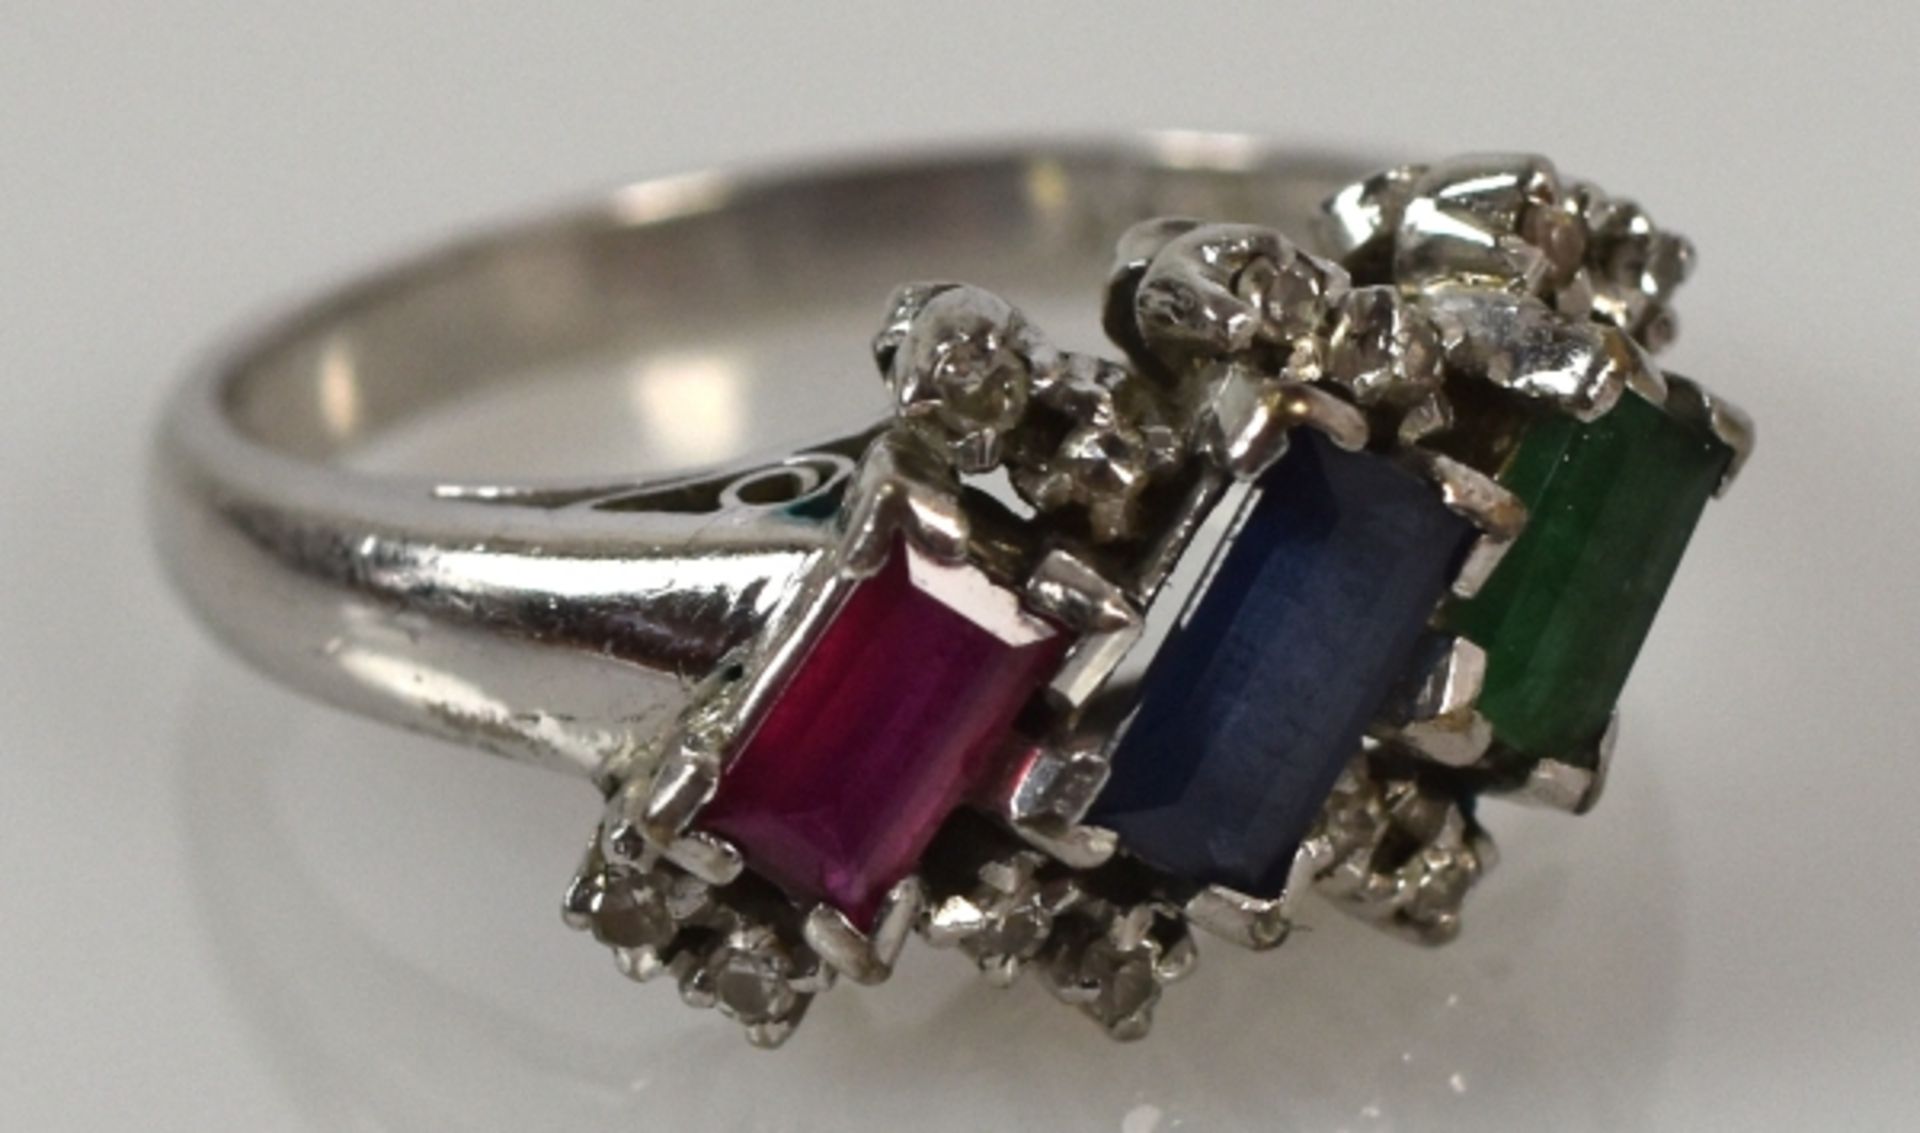 RING Schauseite mit geschliffenem Smaragd, Rubin, Saphir in Baguetteform, seitlich kleine Diamanten,